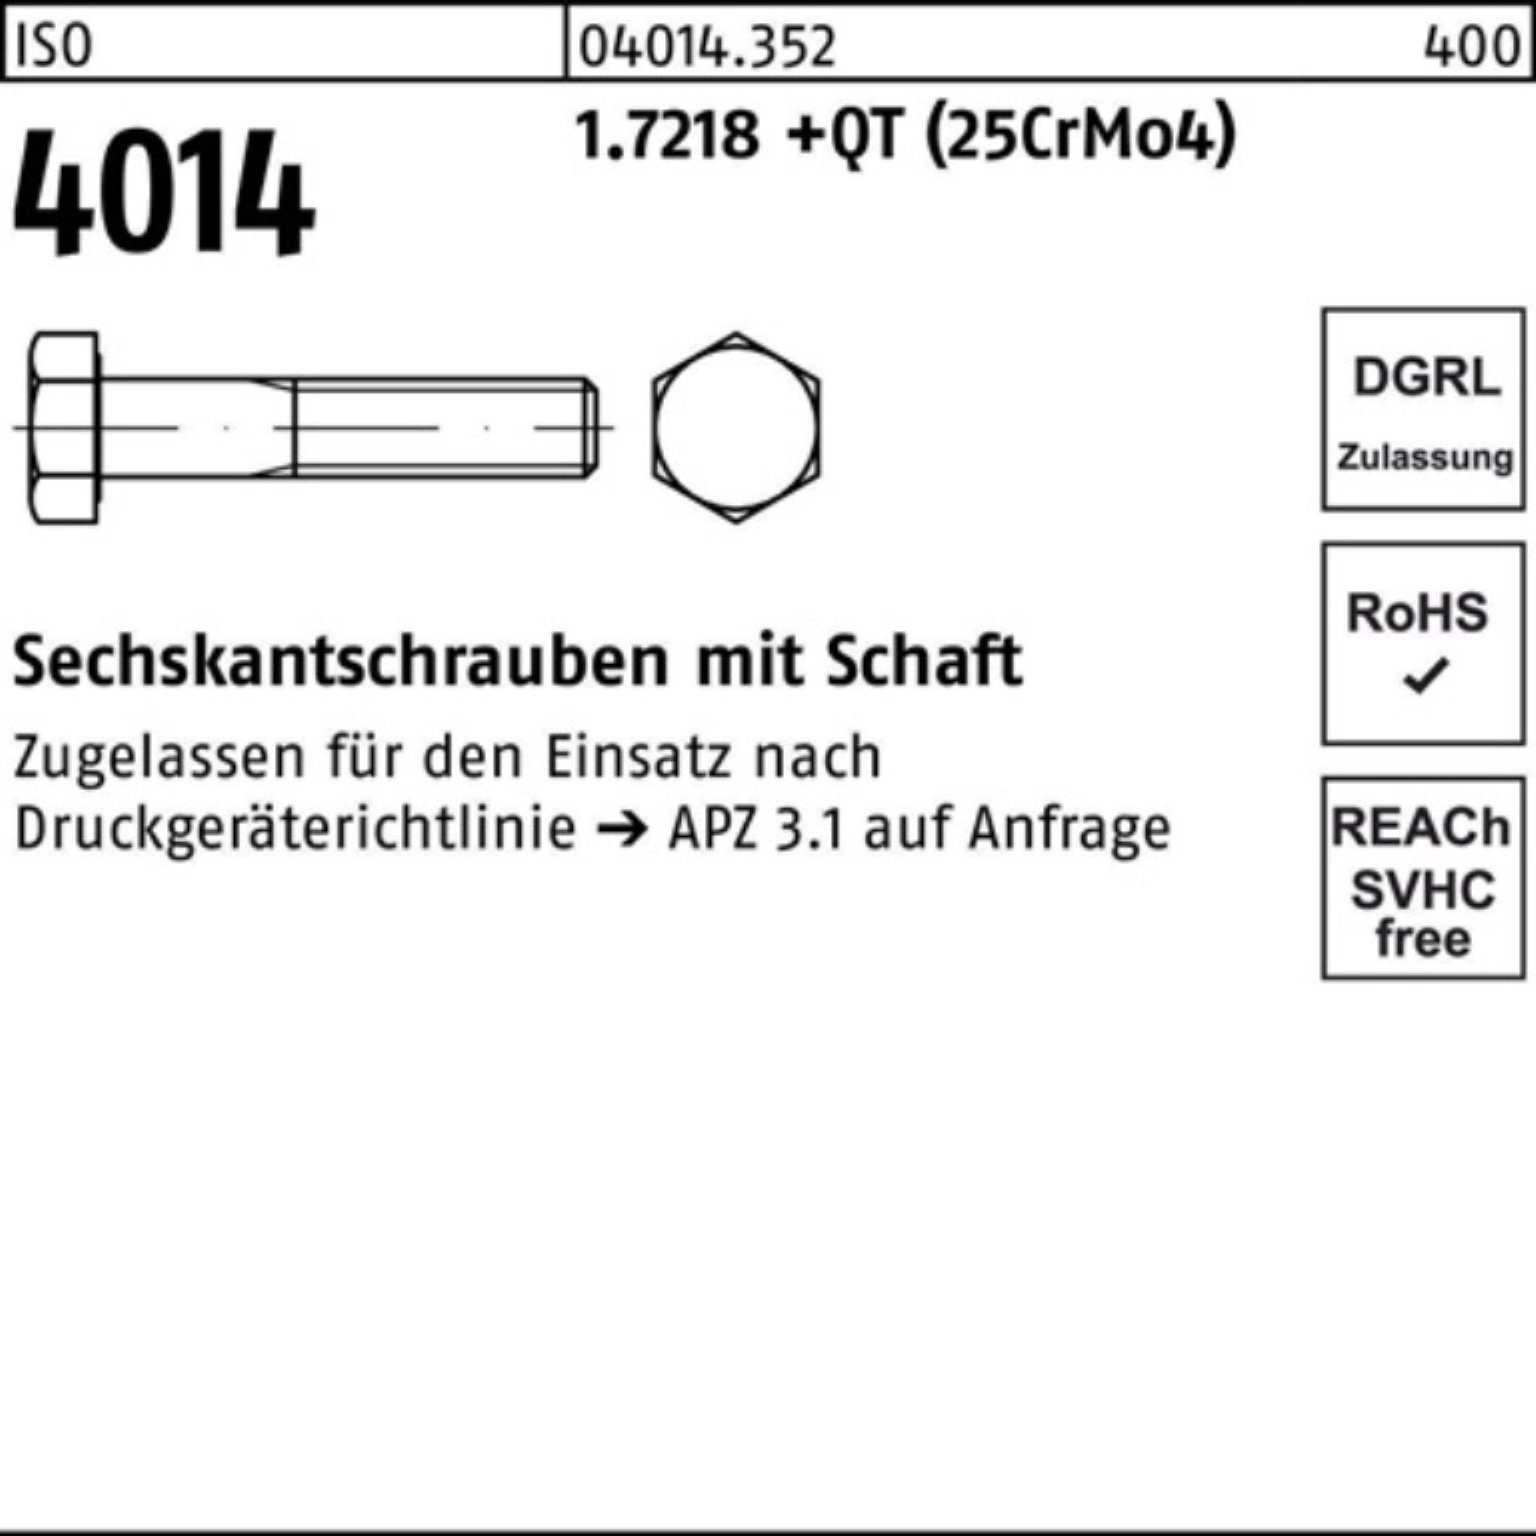 Bufab Sechskantschraube 100er Pack Sechskantschraube 4014 M39x Schaft 180 (25Cr 1.7218 ISO +QT